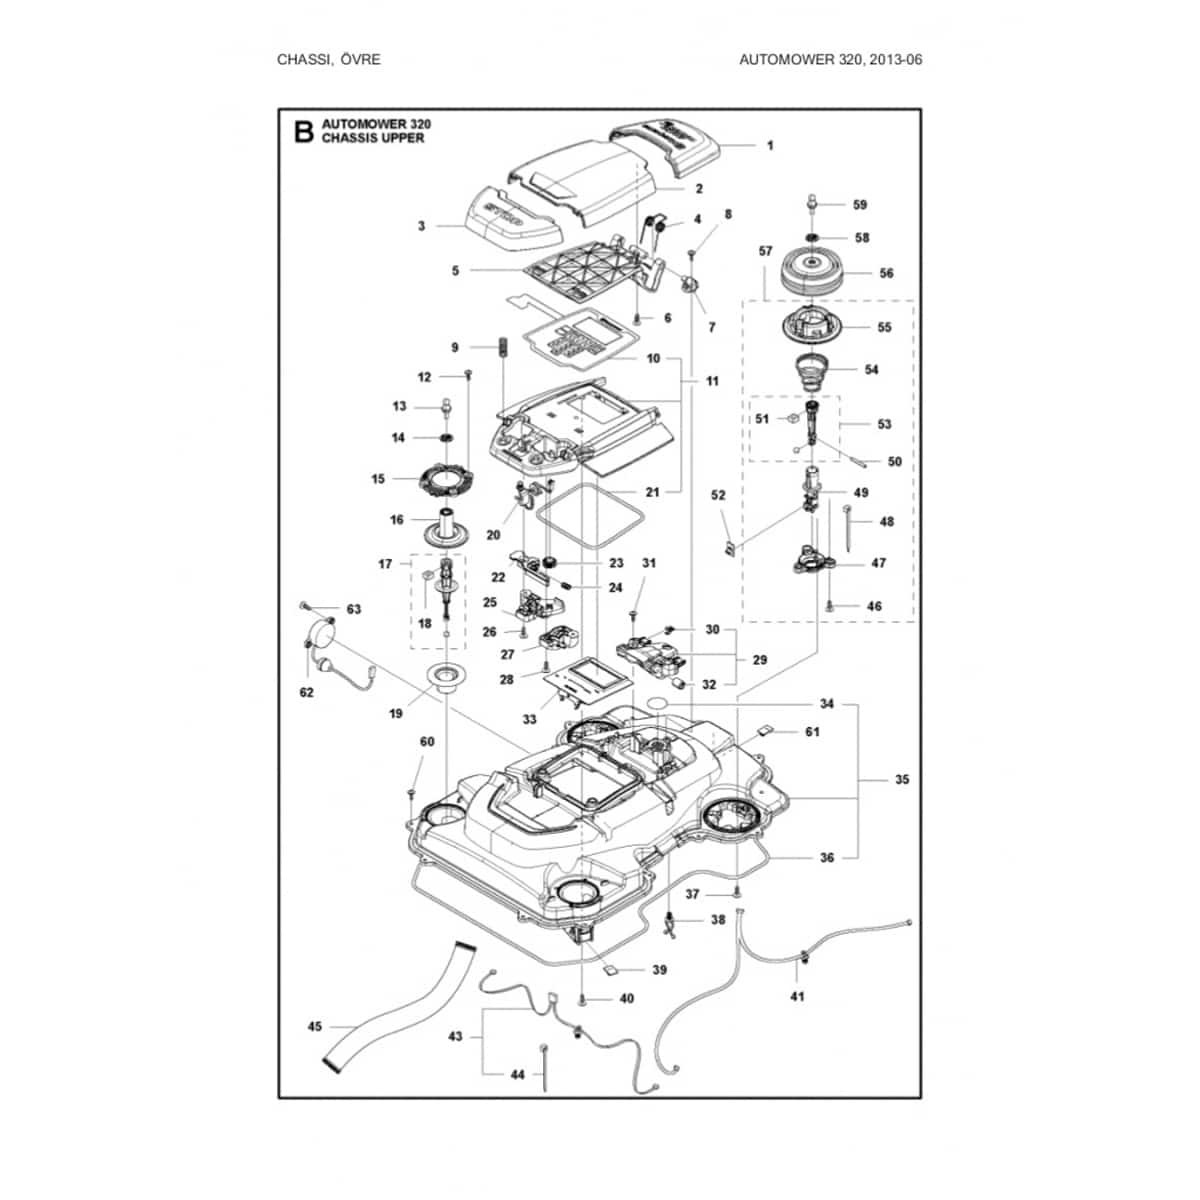 Burlete para Chasis de Automower | Ref. 581 90 32-01